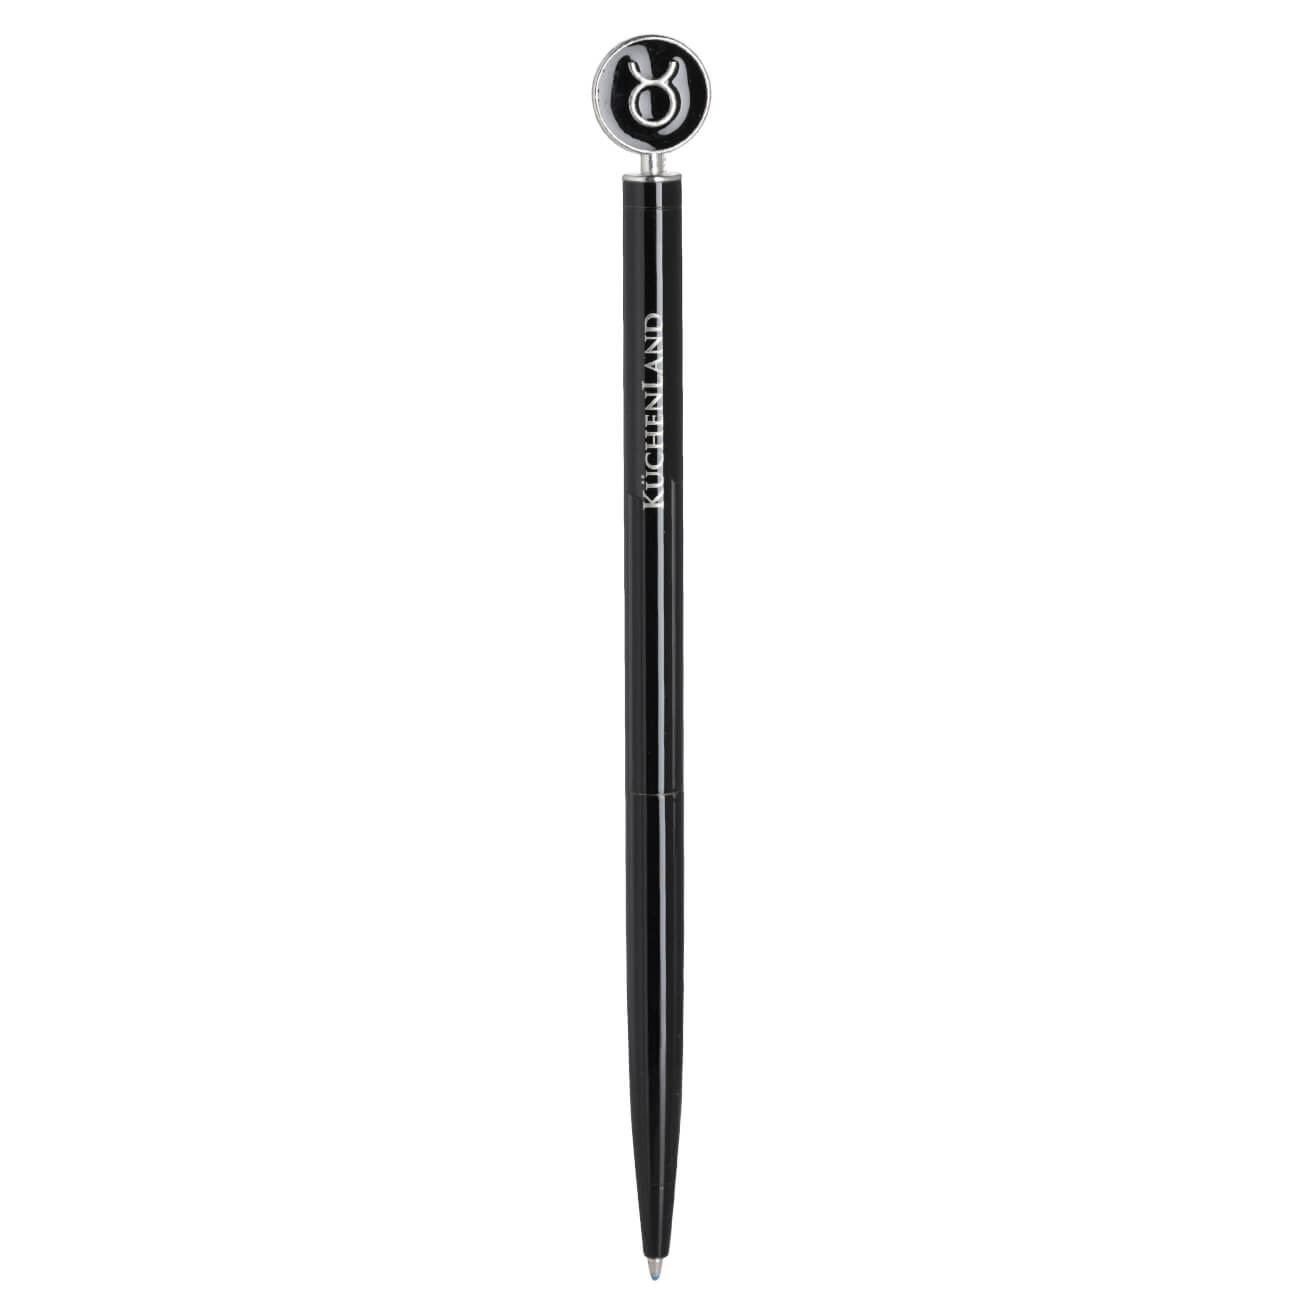 Ручка шариковая, 15 см, с фигуркой, сталь, черно-серебристая, Телец, Zodiac ручка подарочная шариковая автоматическая